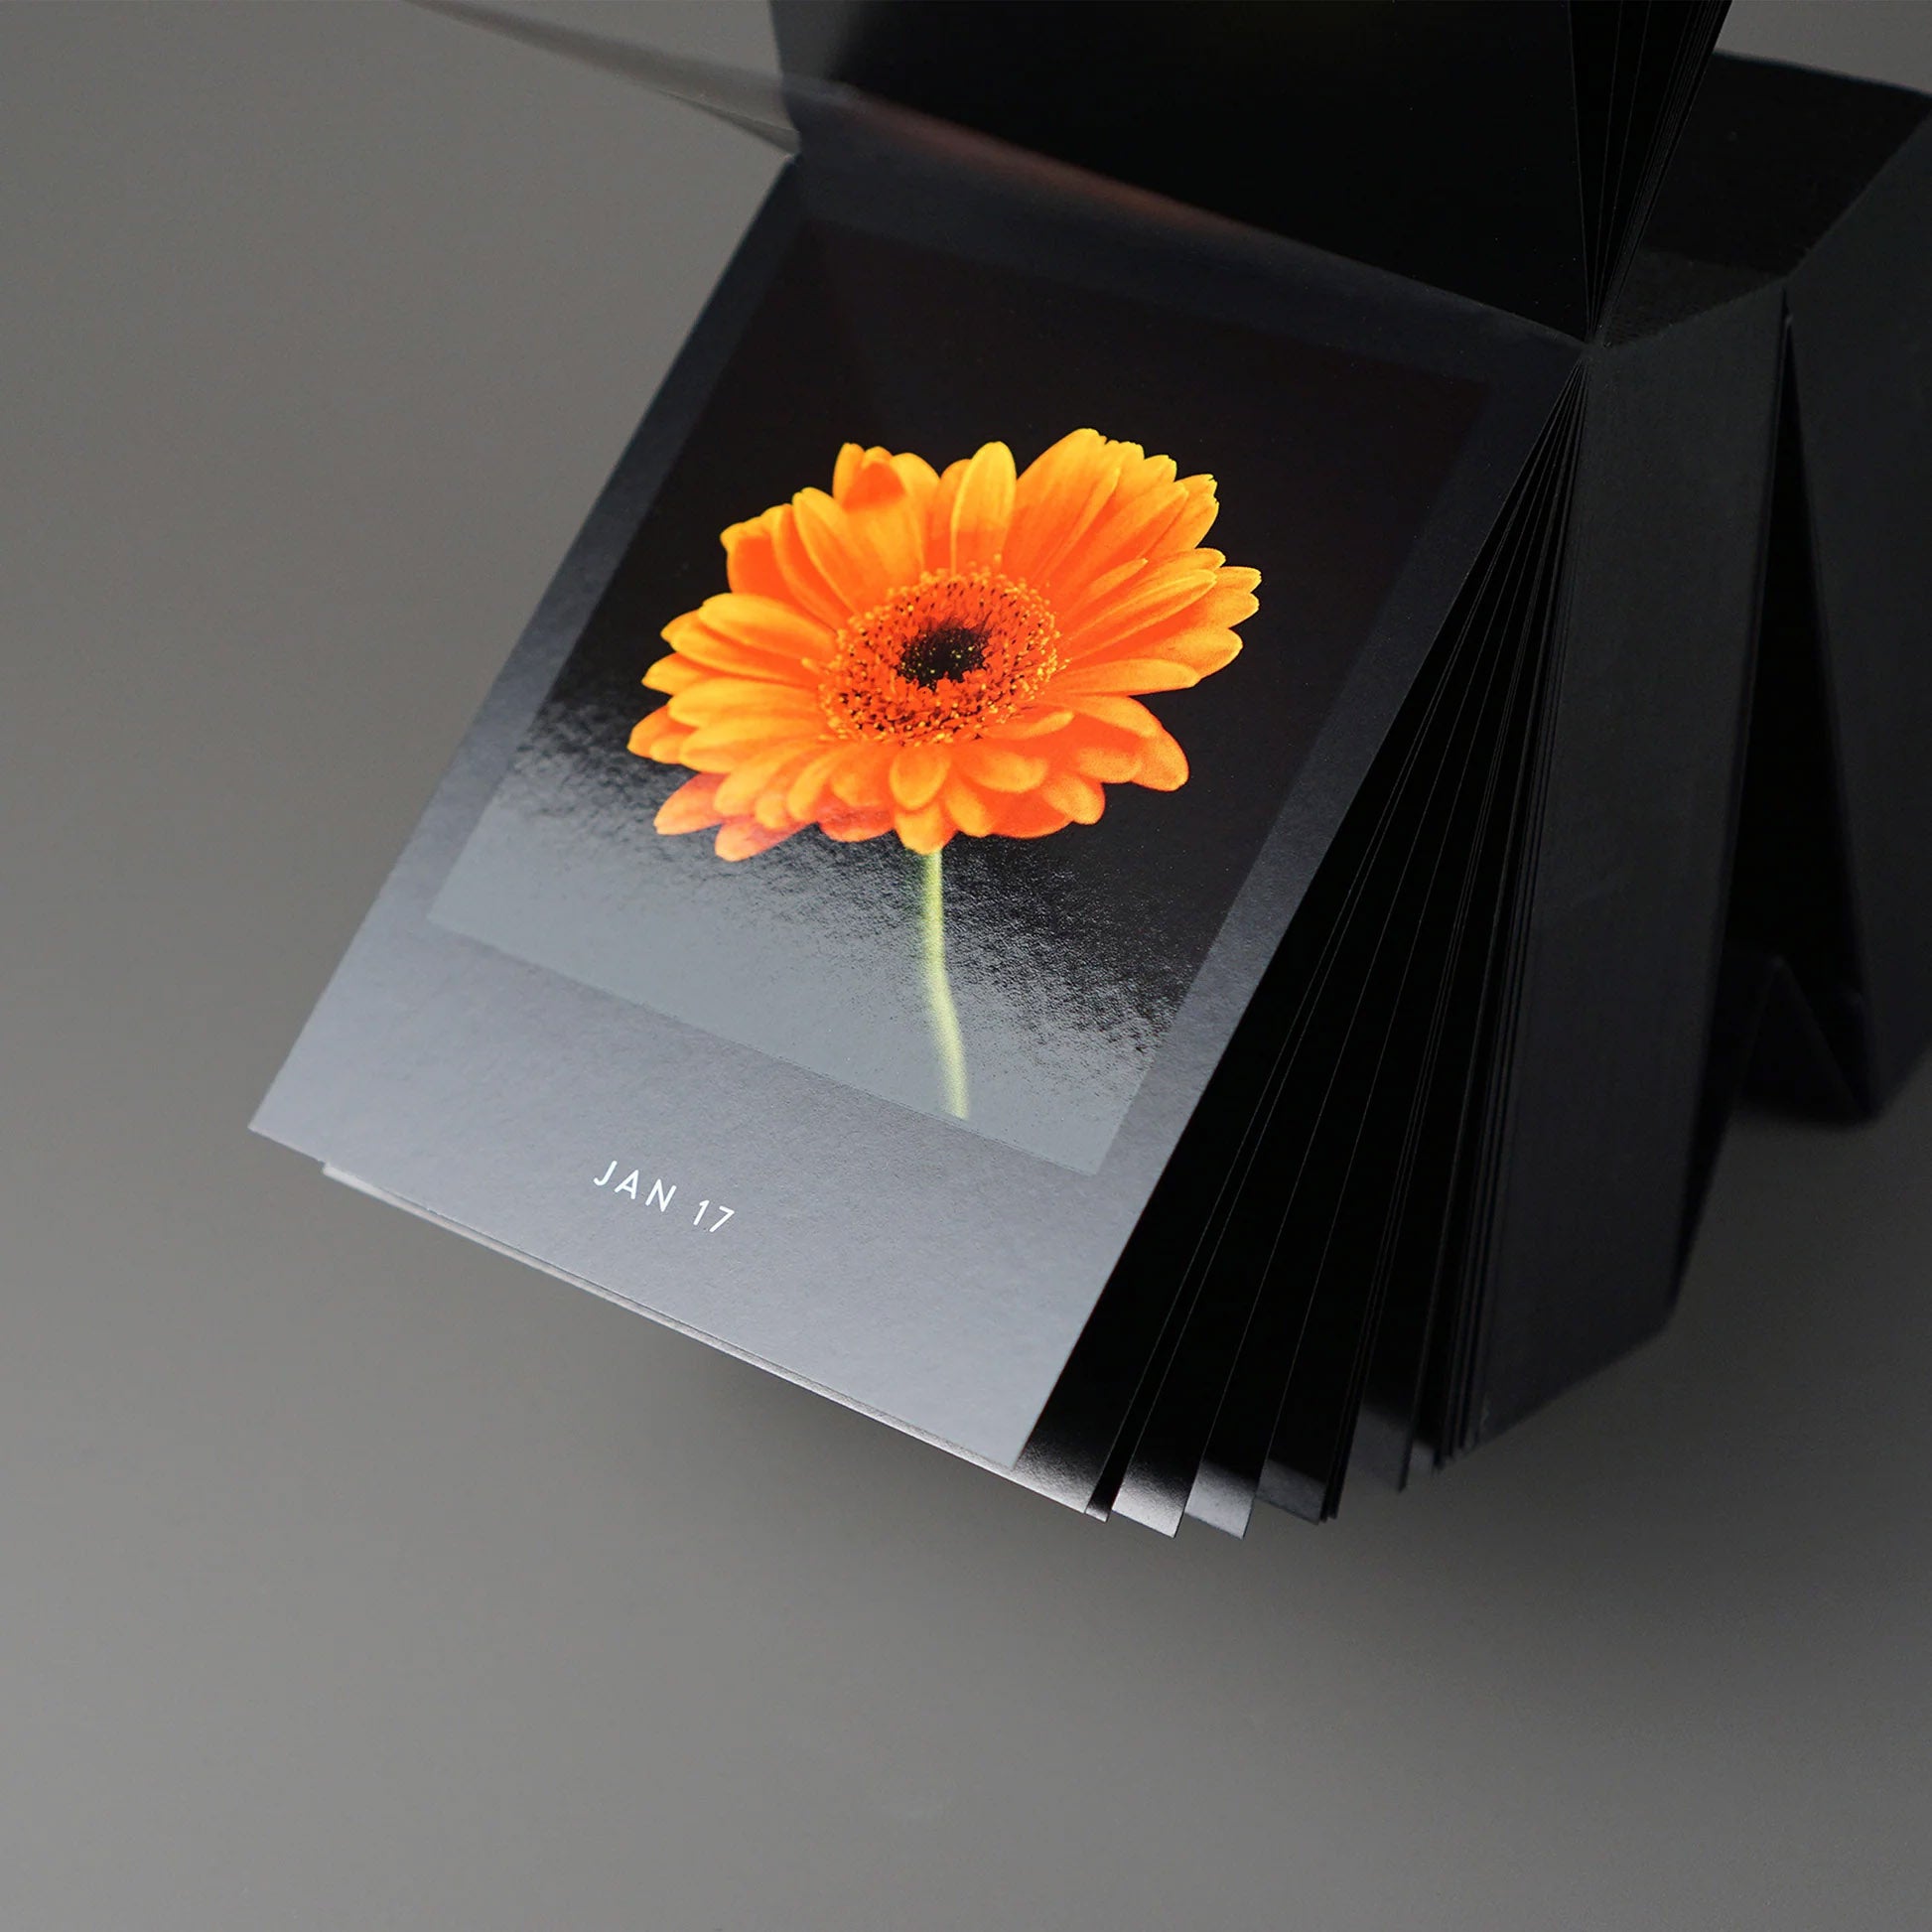 Bureaukalender Flamboyant Flowers│Bloemen│17 januari opgengeslagen